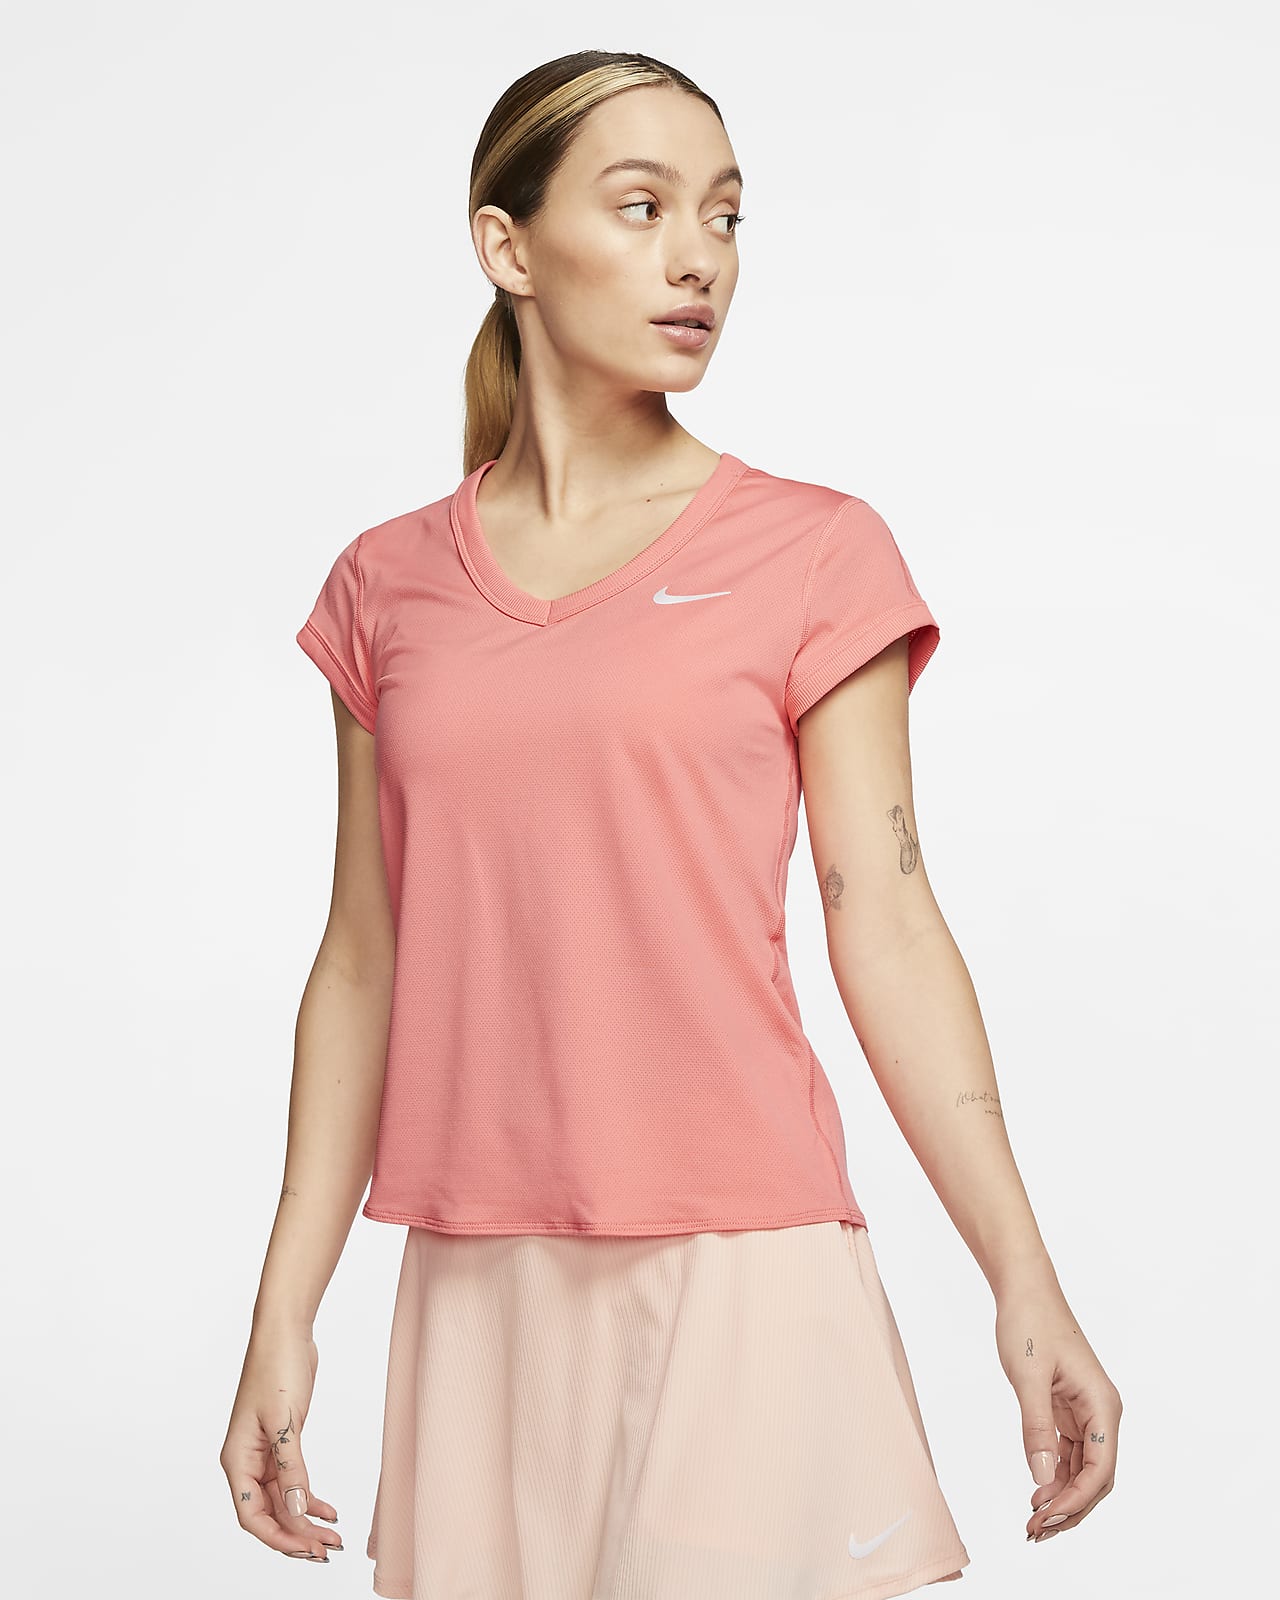 Short-Sleeve Tennis Top. Nike JP